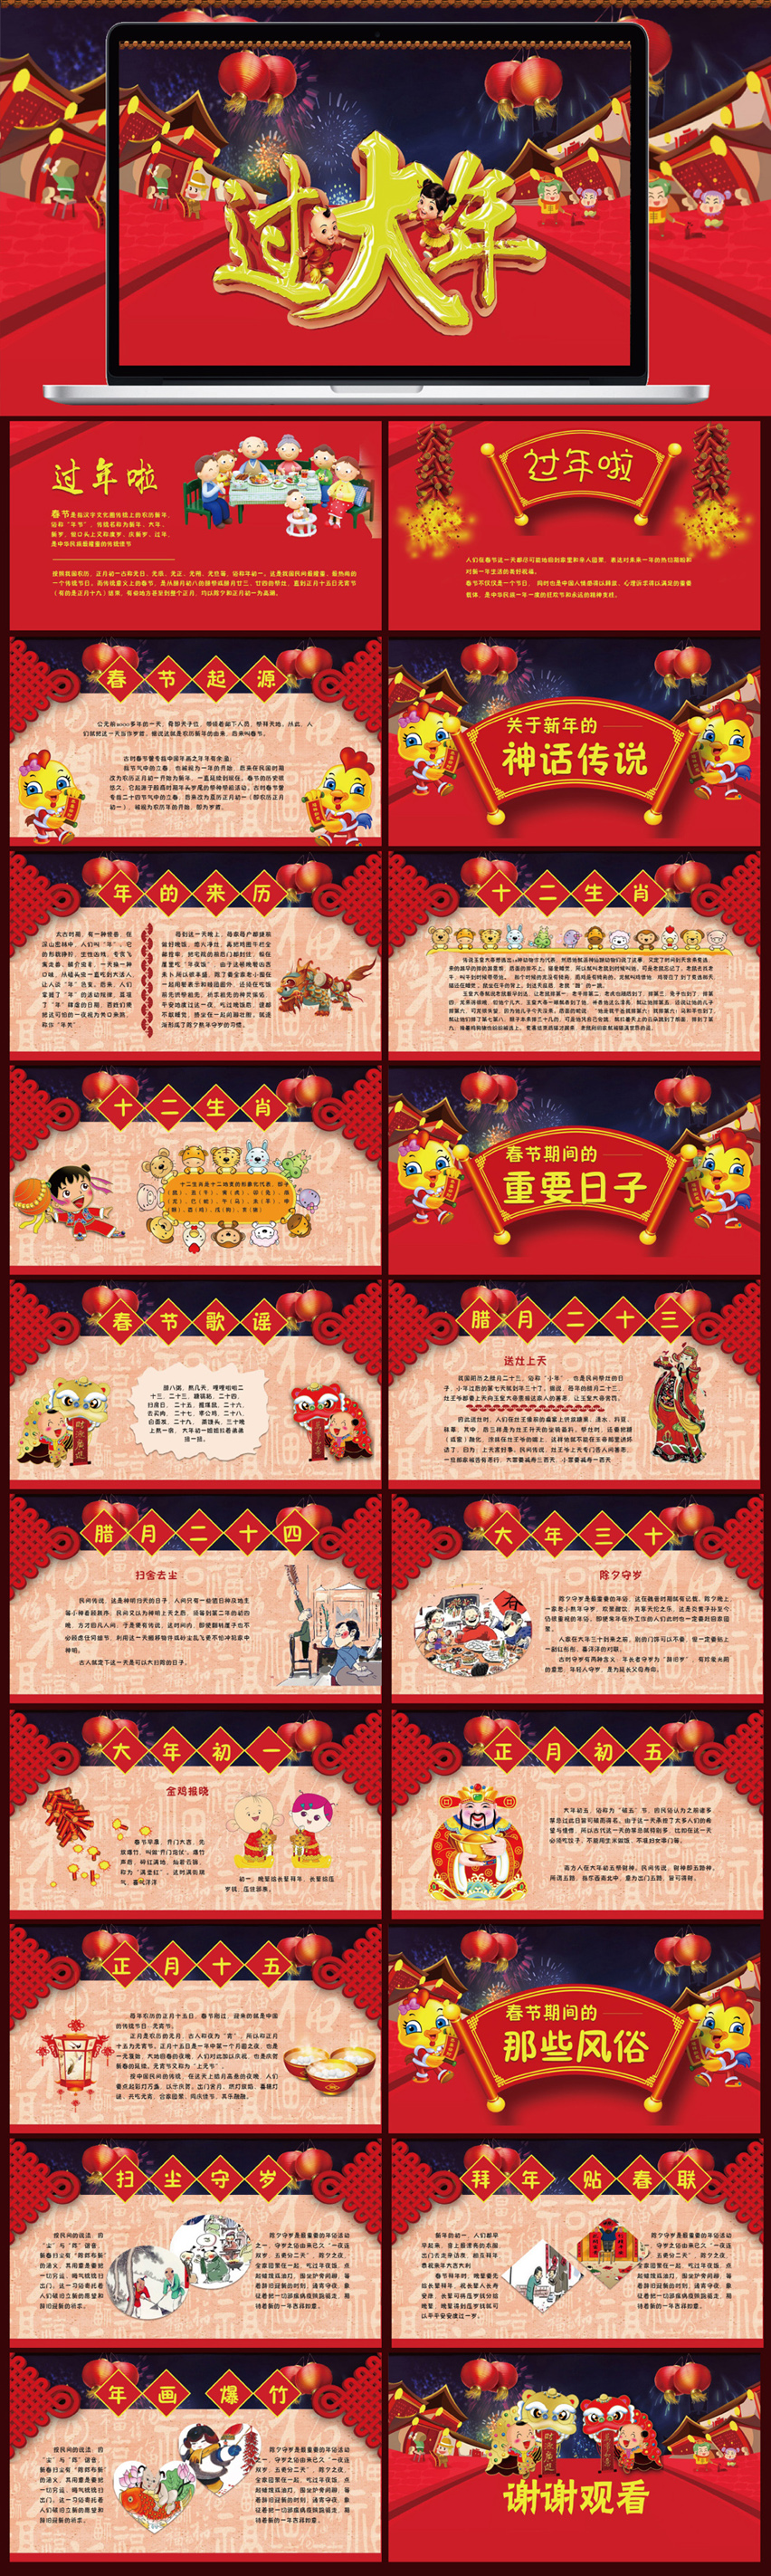 【传统节日ppt模板】【陈小幺出品】幼儿园传统节日–